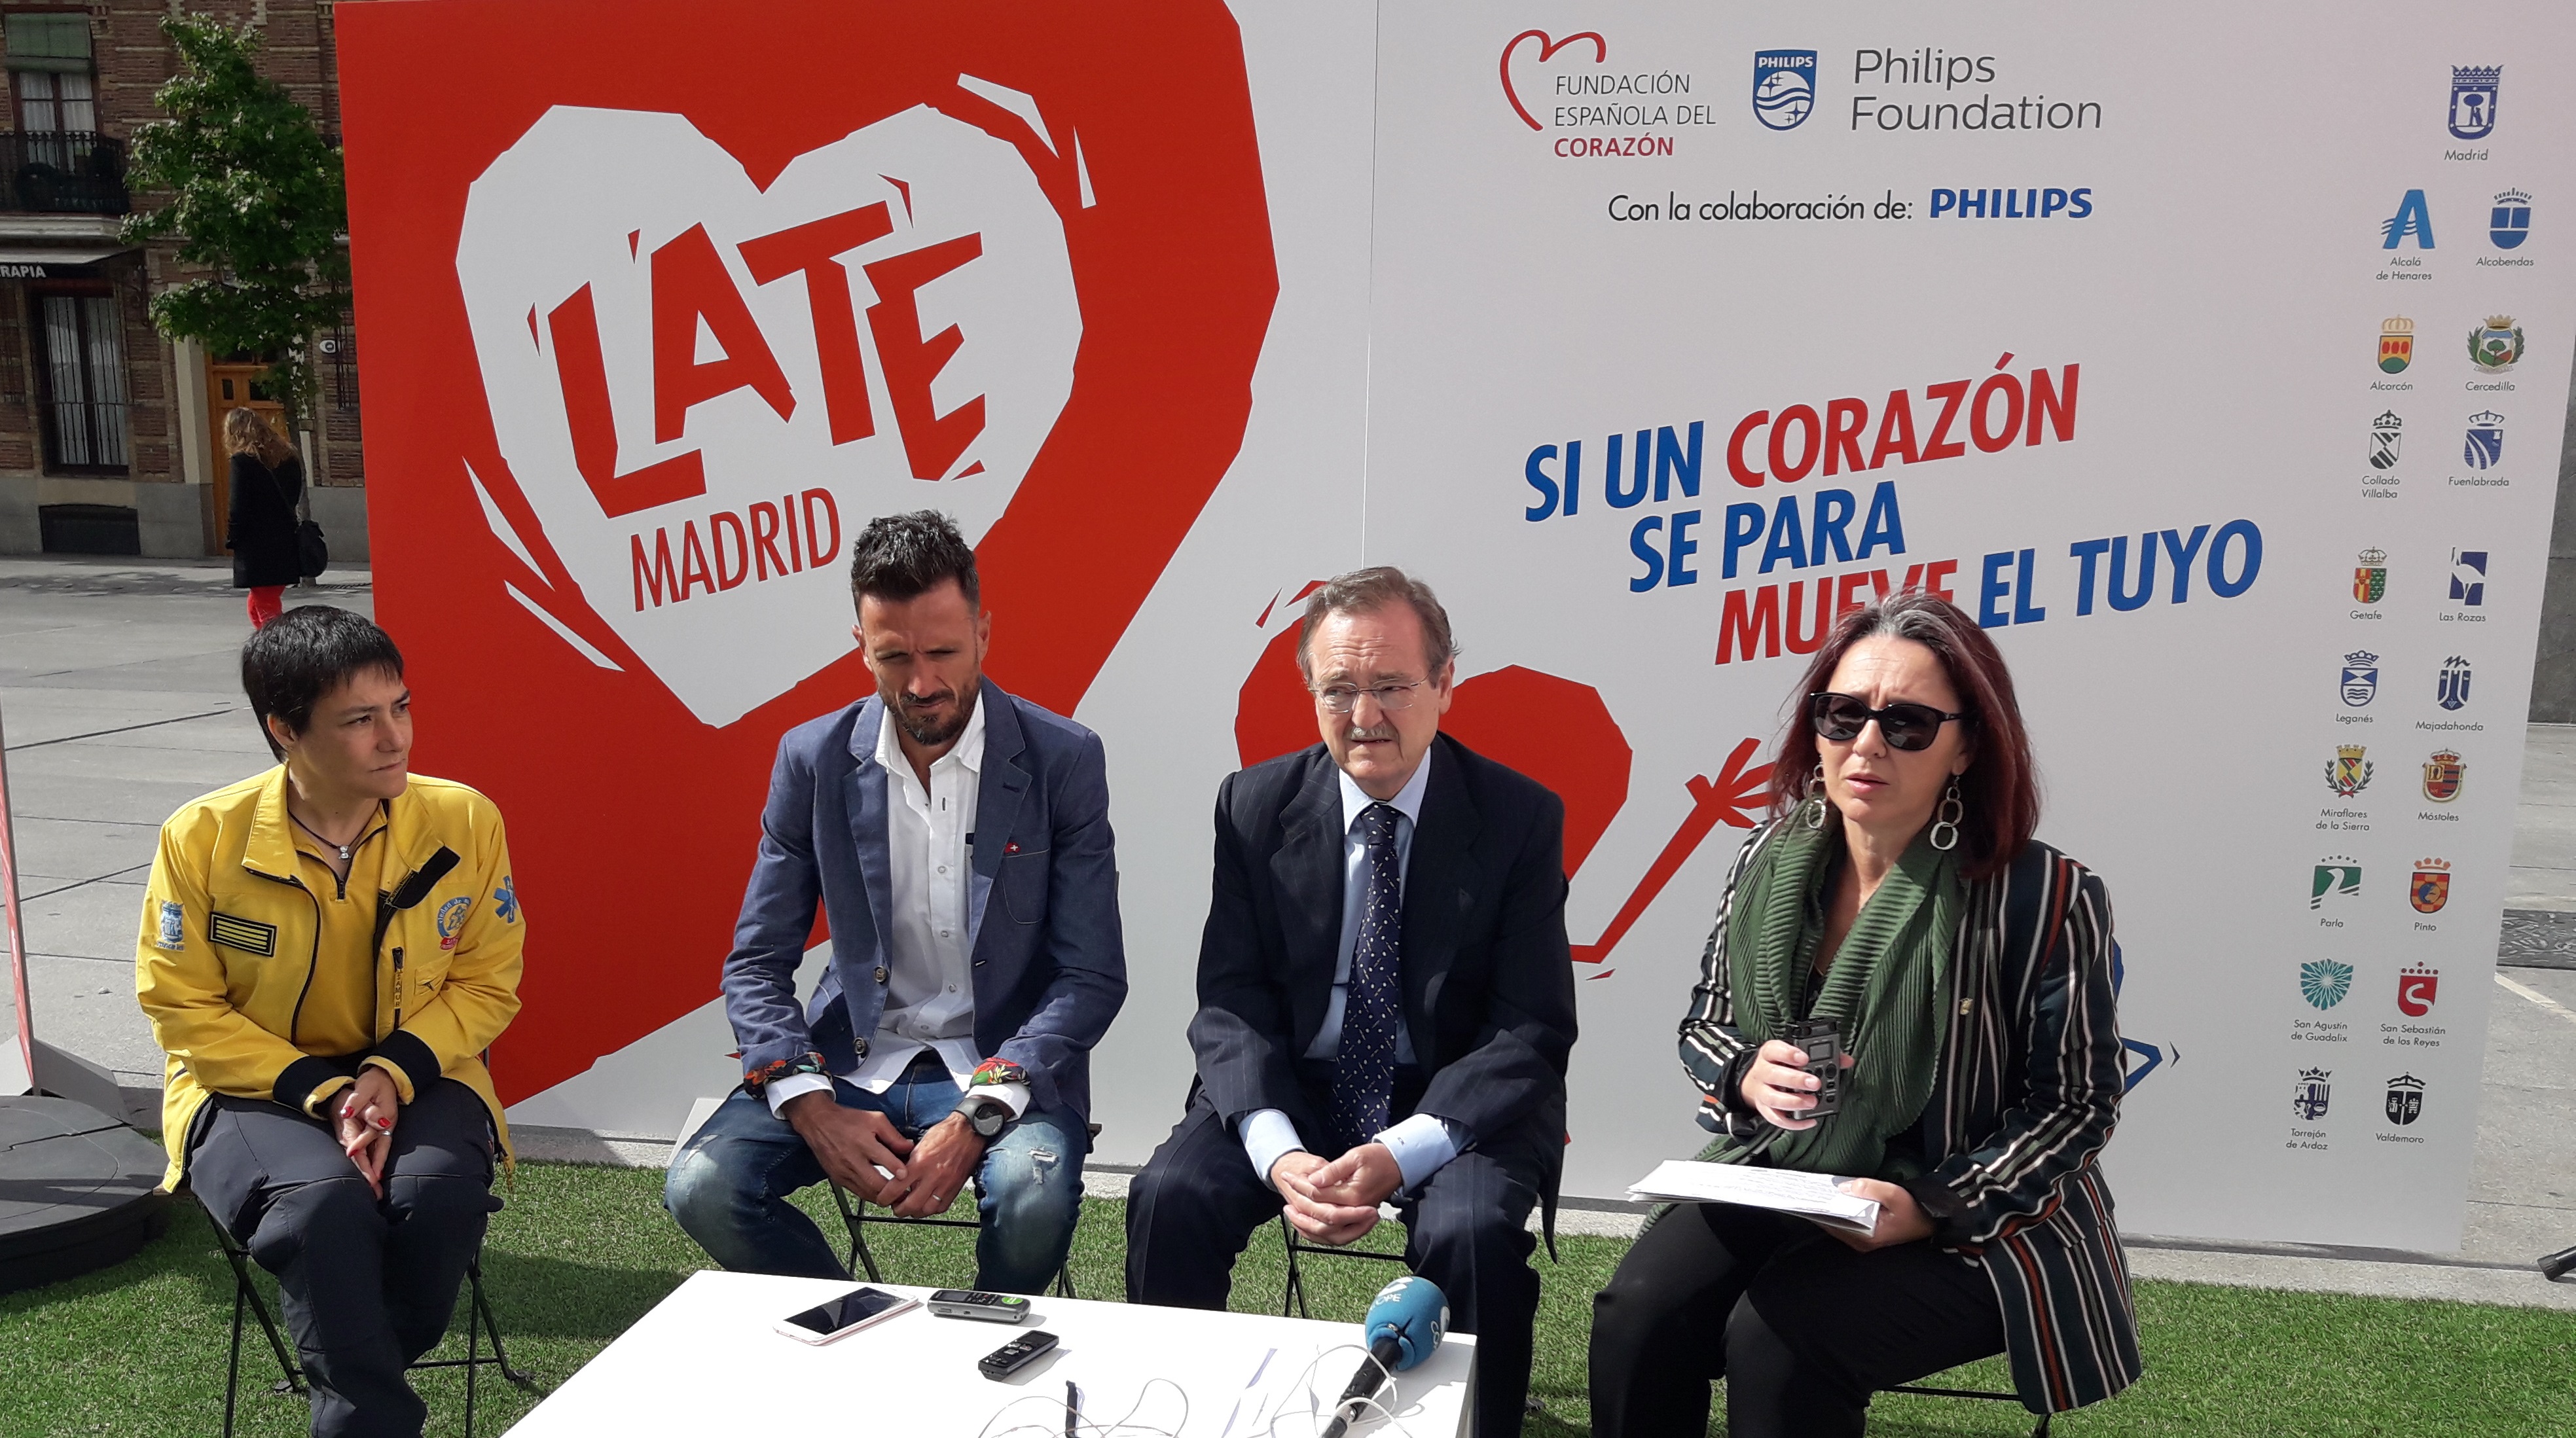 La FEC y la Fundación Philips presentan 'Late Madrid', una llamada a la acción en las ciudades ante el paro cardiaco súbito